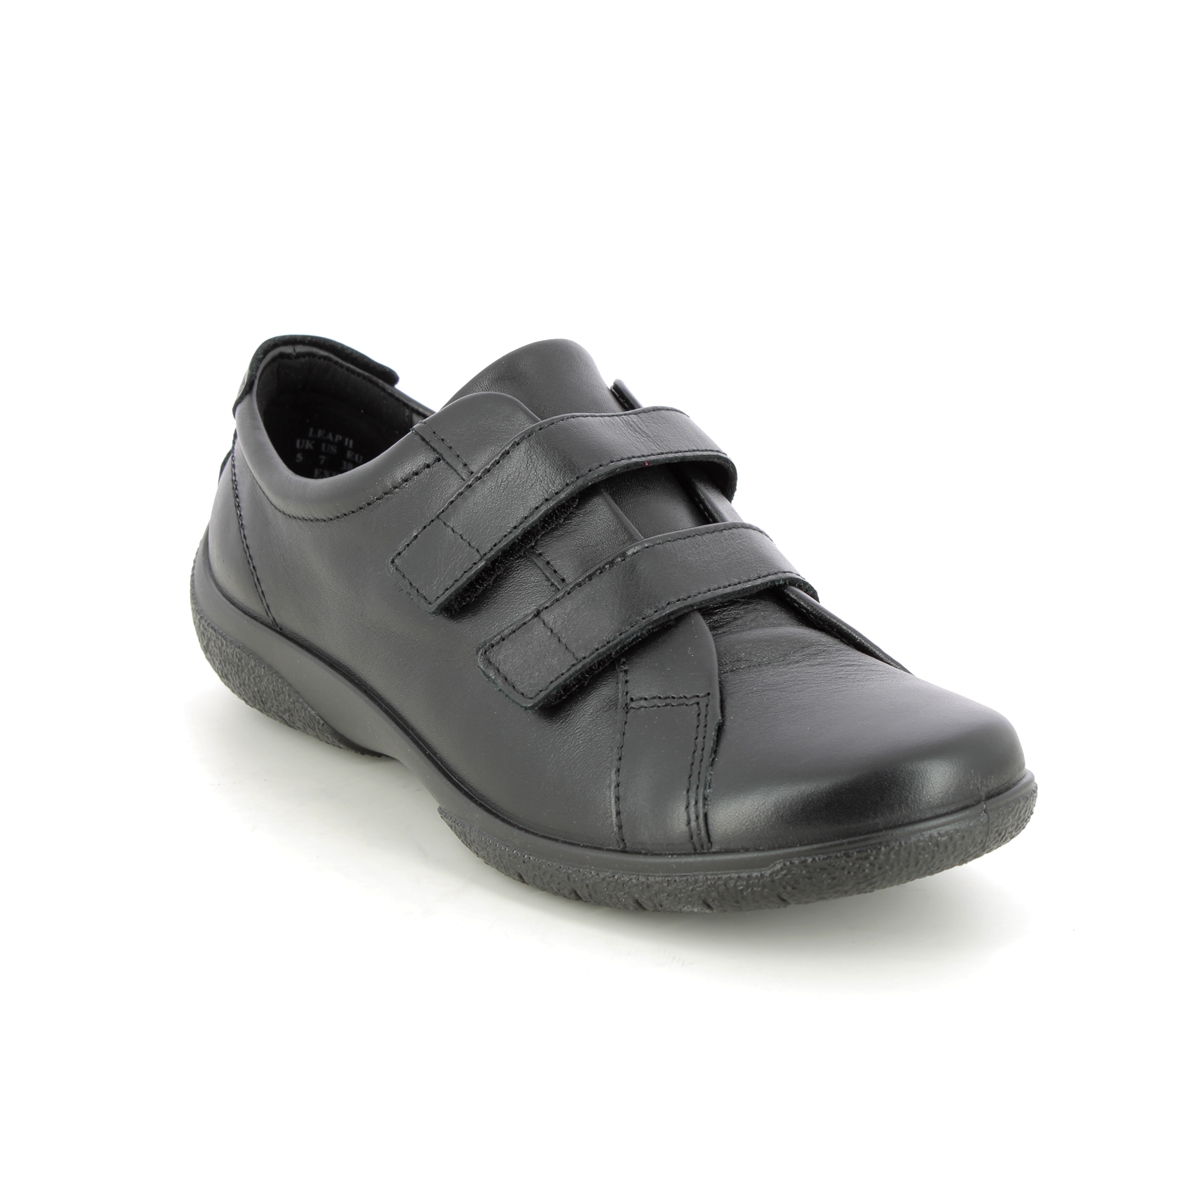 Wide Fit Extra Comfort Shoes Factory Sale | bellvalefarms.com